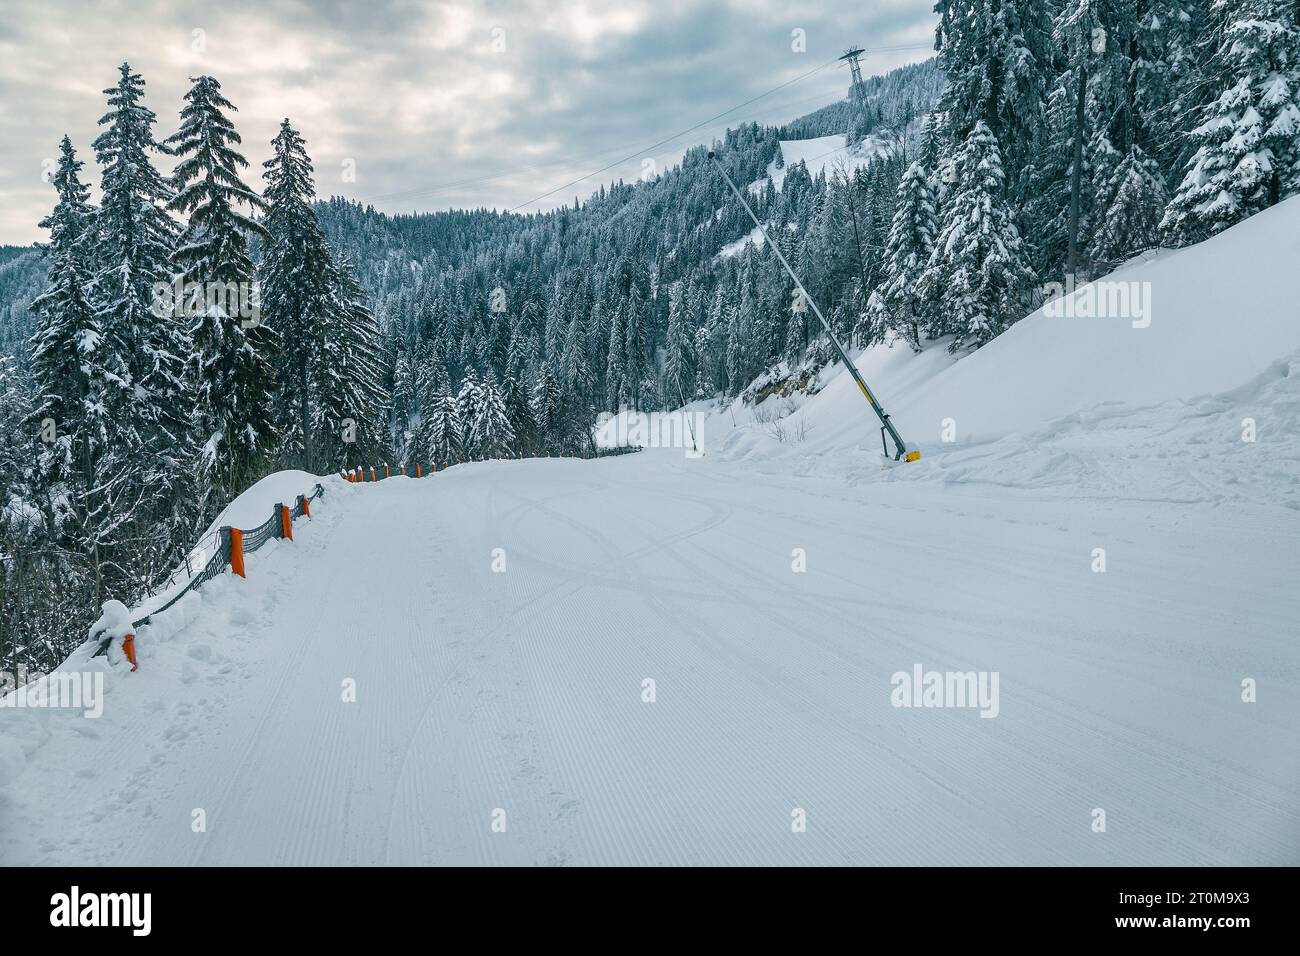 Itinéraire de ski fraîchement préparé avec des canons à neige et forêt de pins enneigés dans la station de ski Poiana Brasov, Transylvanie, Roumanie, Europe Banque D'Images